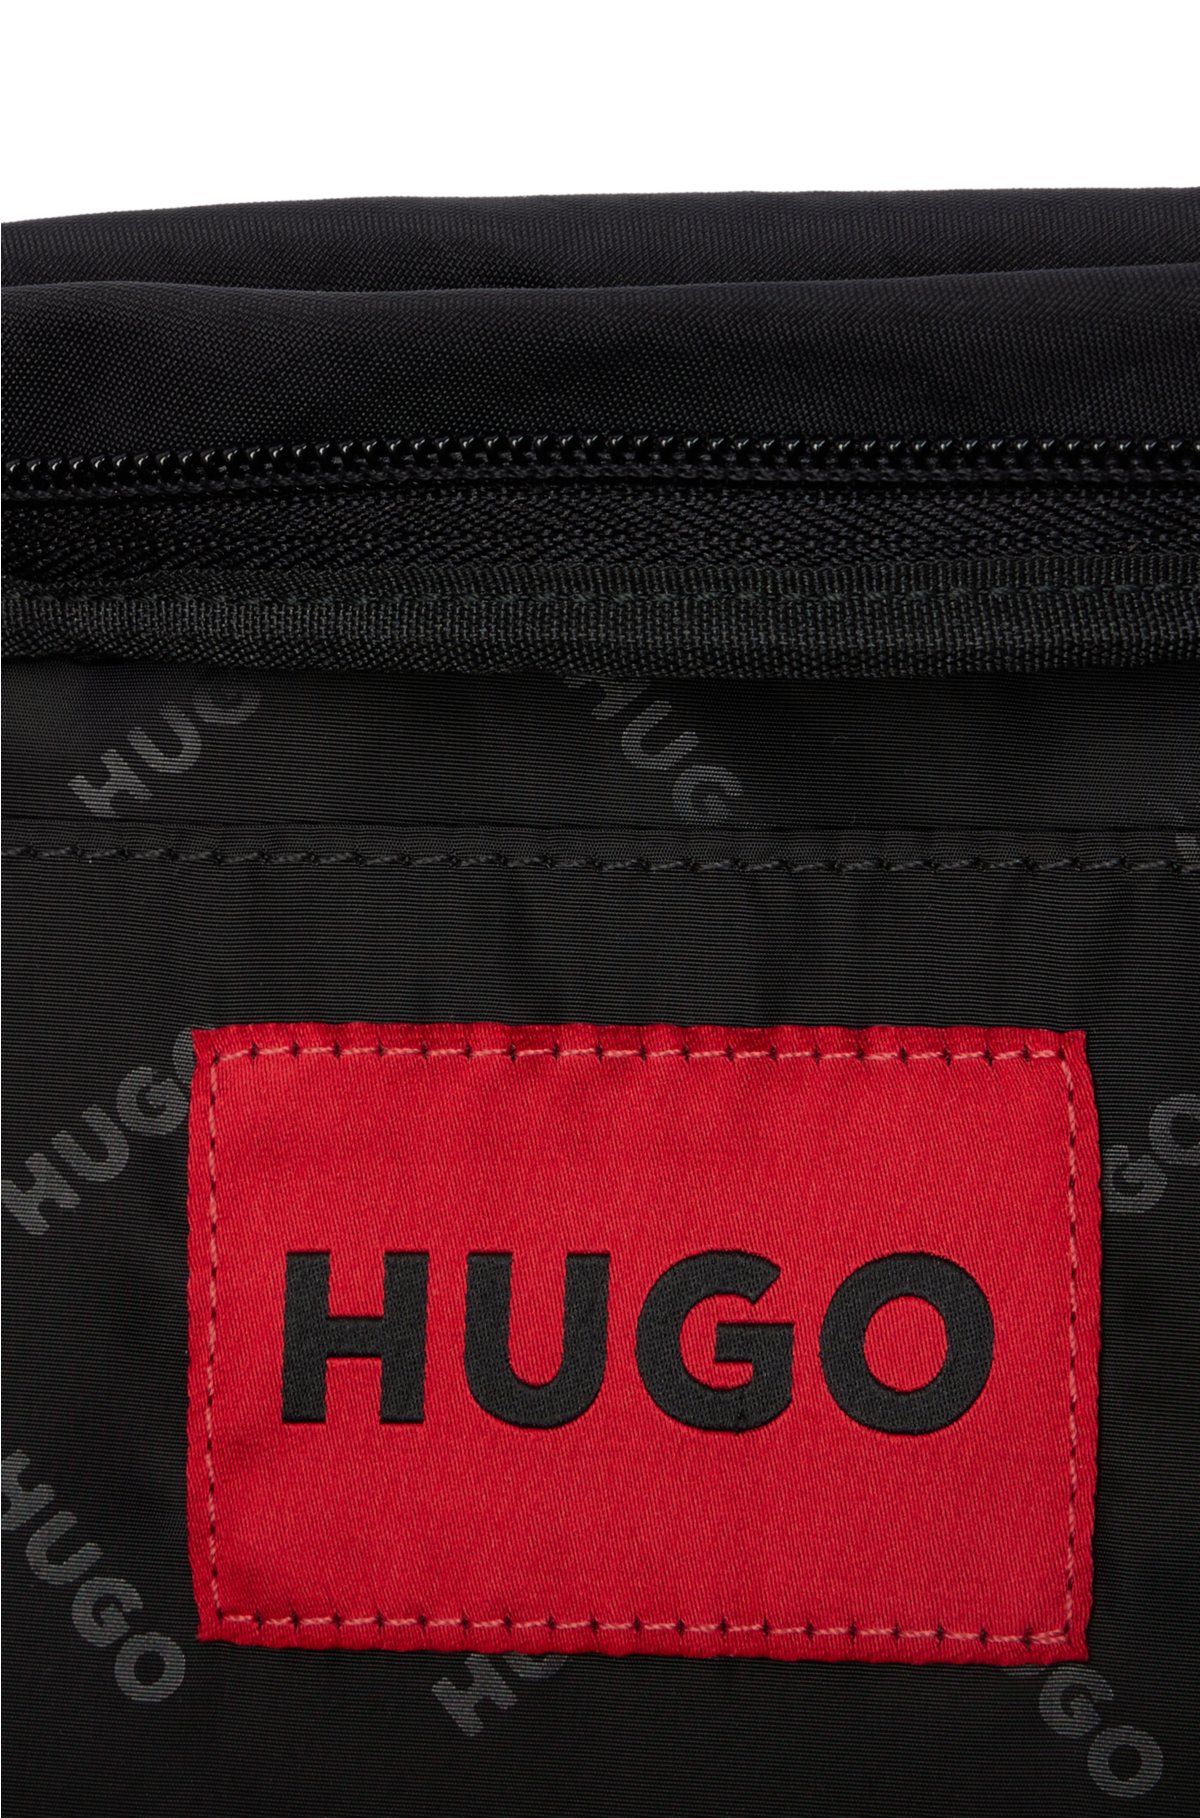 オリジナル 【美品】HUGO BOSS メッセンジャーバッグ 極上シボ革 